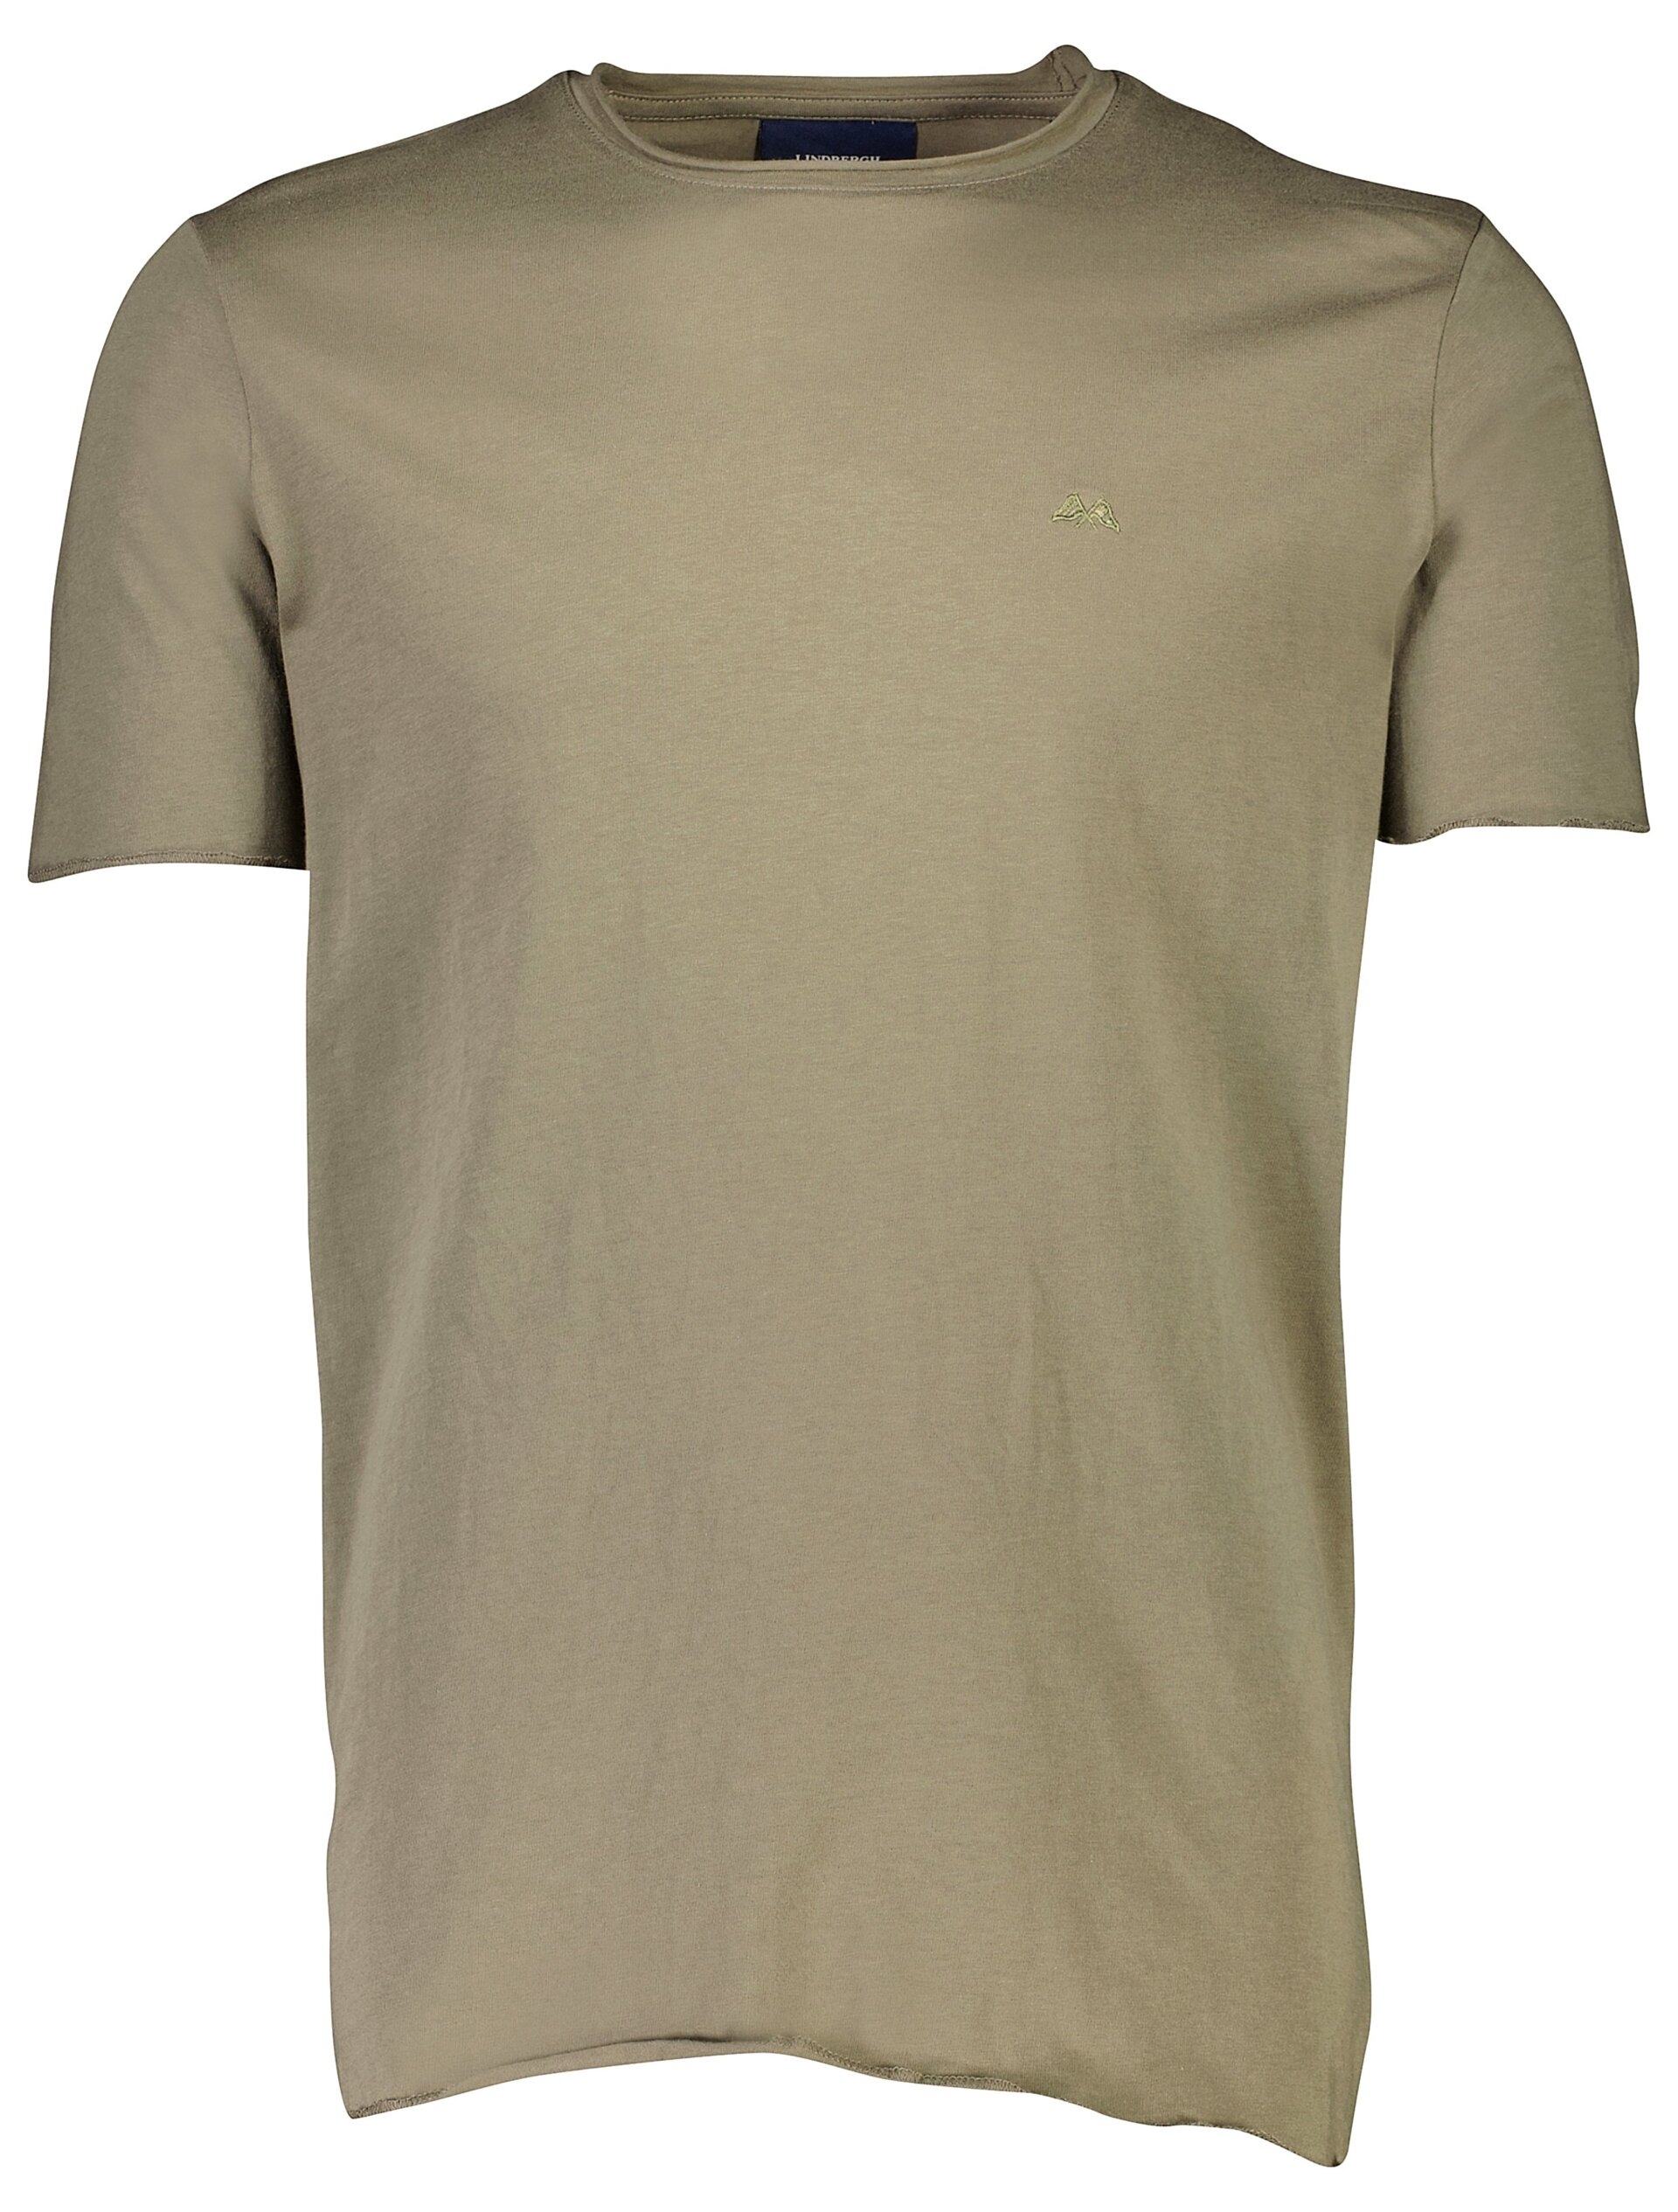 Lindbergh T-shirt grön / lt dusty army